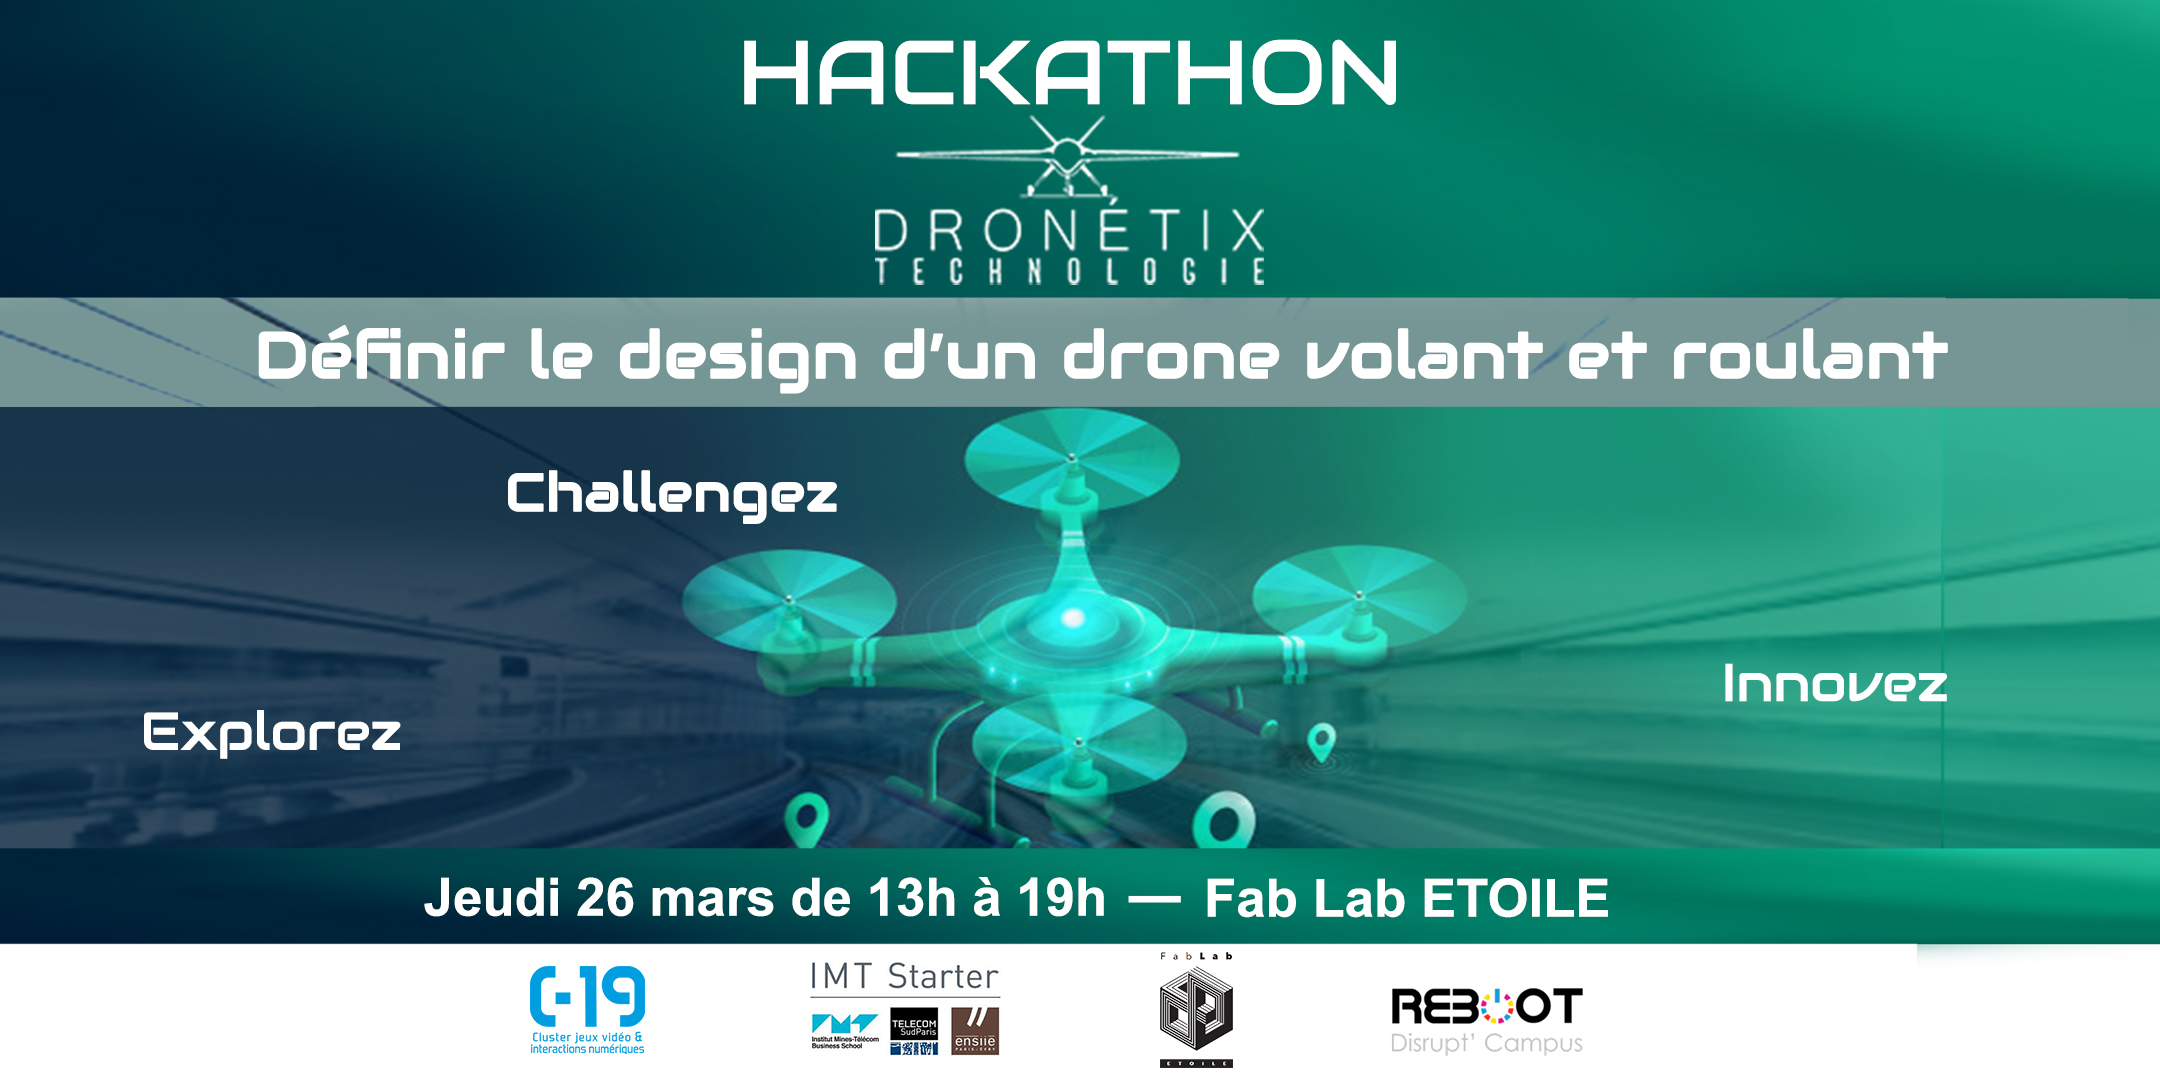 Hackathon Dronetix Technologie